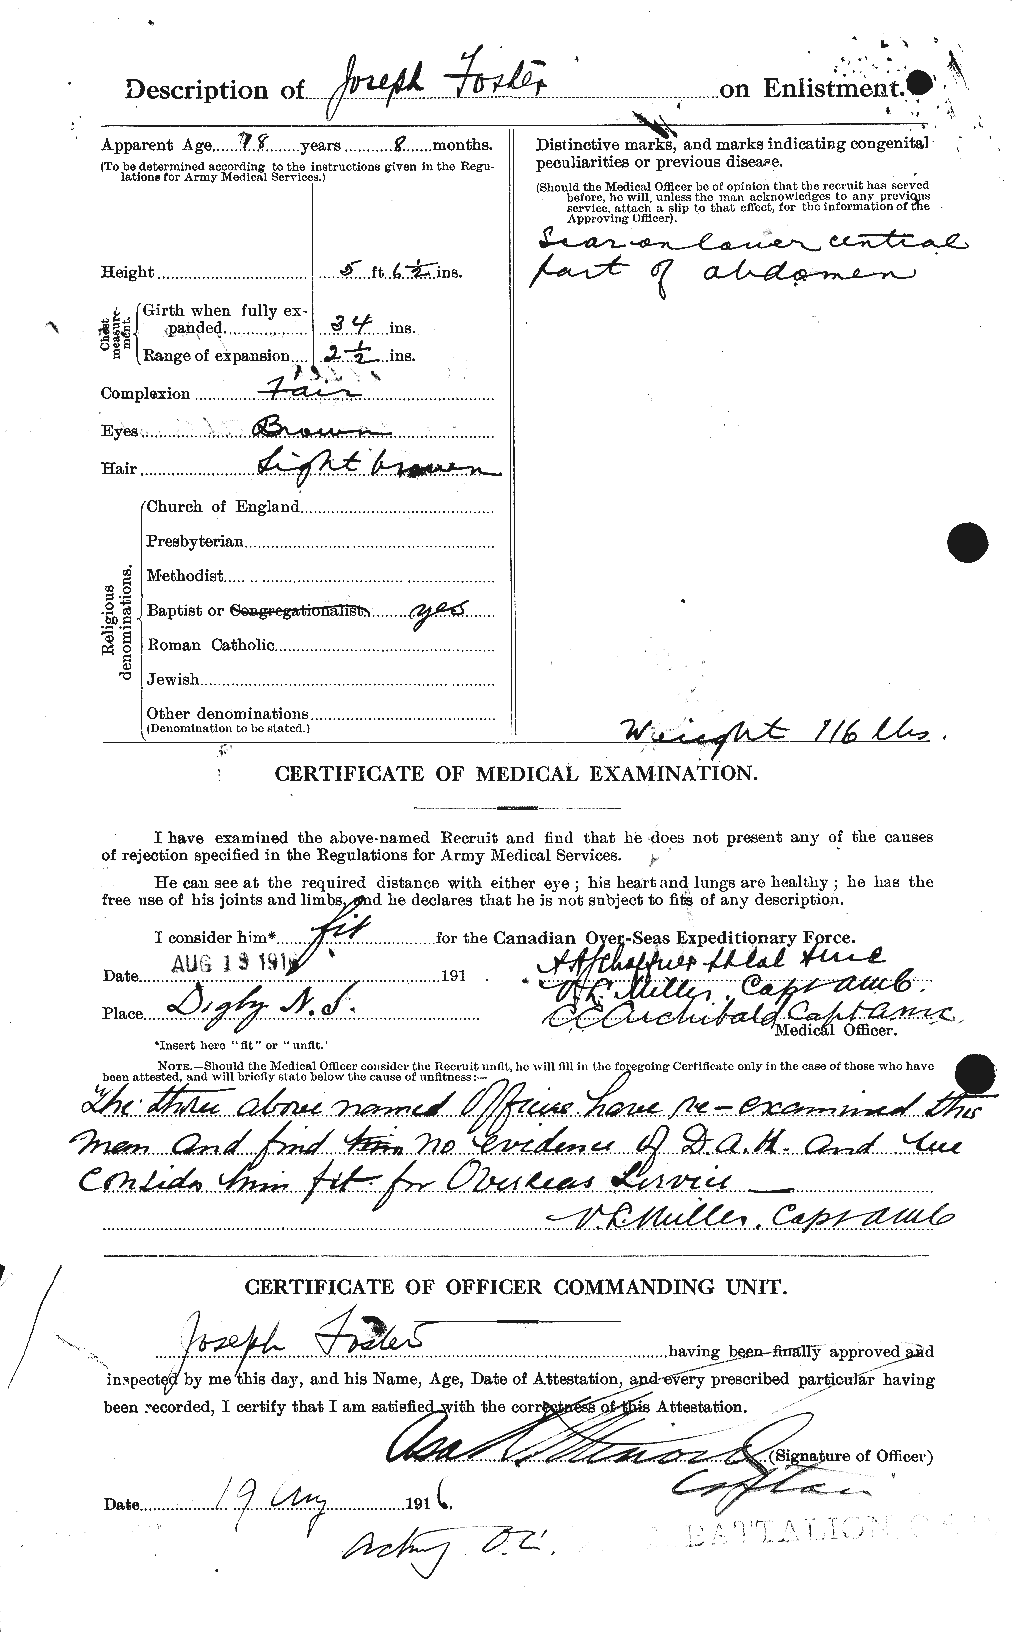 Dossiers du Personnel de la Première Guerre mondiale - CEC 333376b